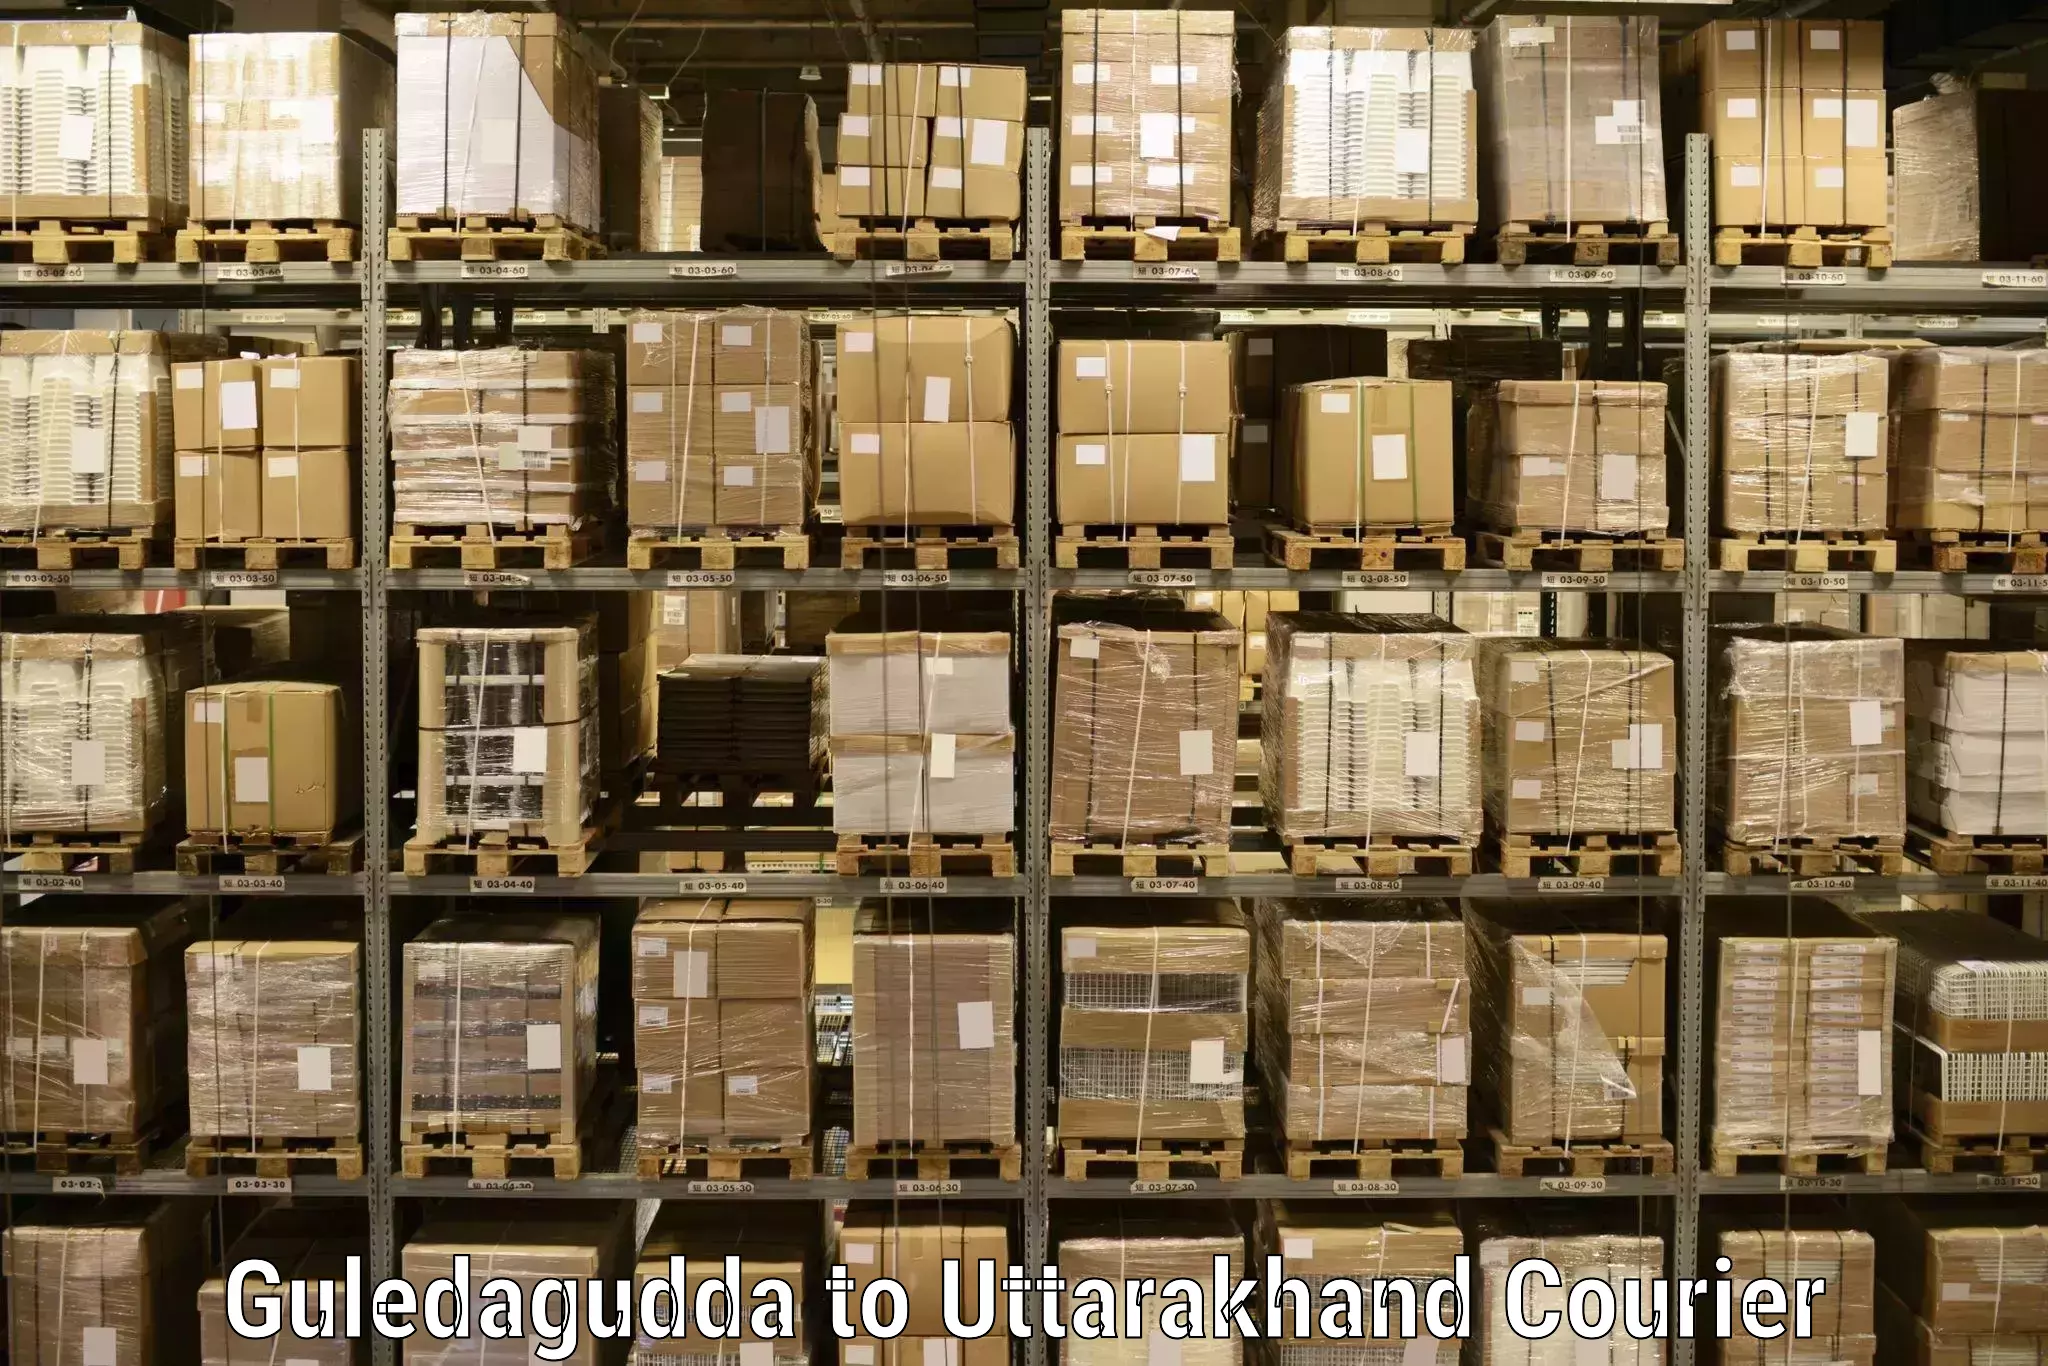 Individual parcel service Guledagudda to Dwarahat